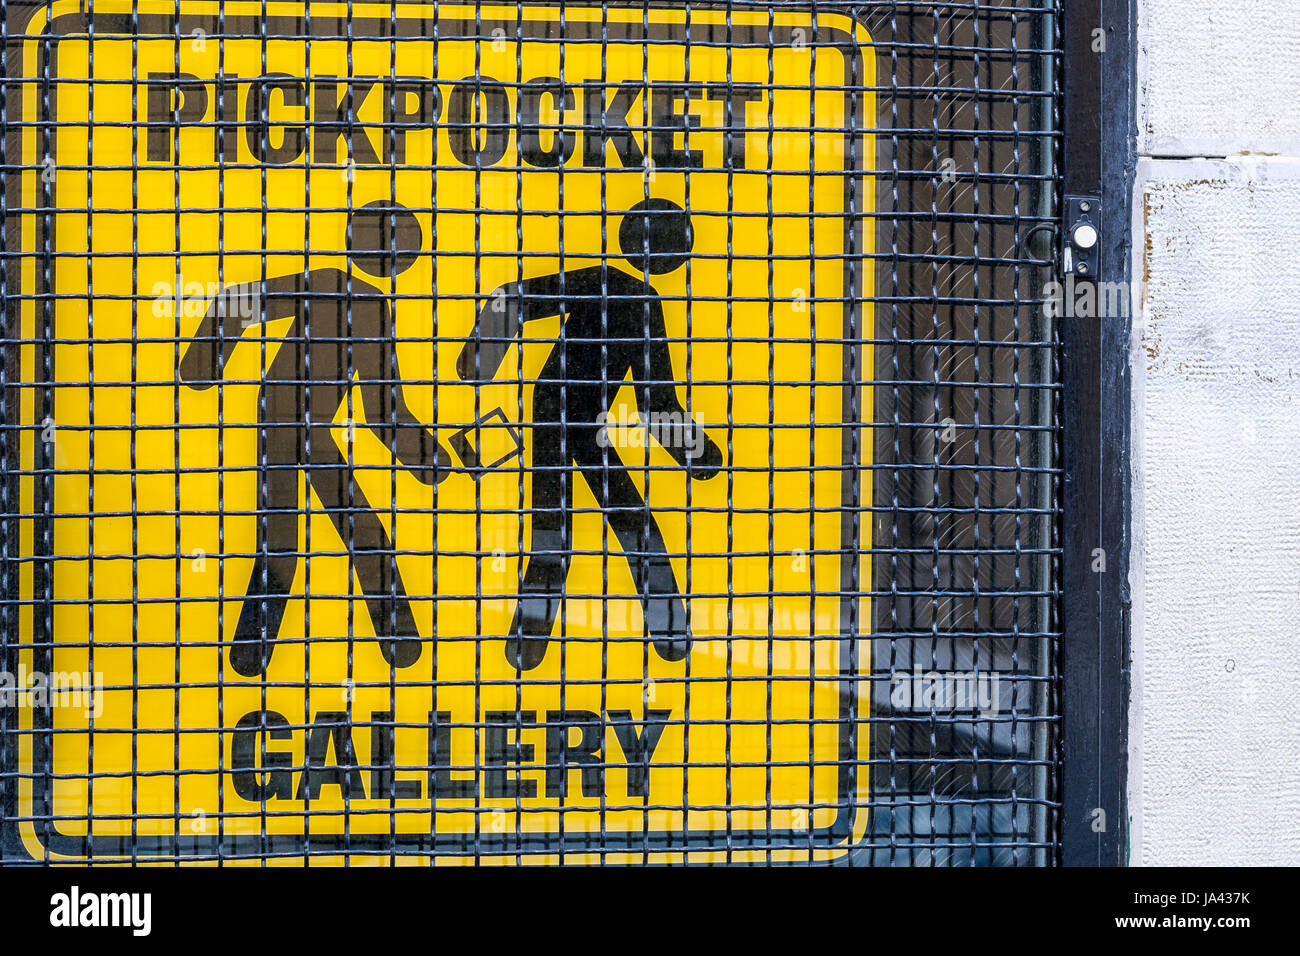 Pickpocket galerie - un panneau d'avertissement noir sur fond jaune Banque D'Images